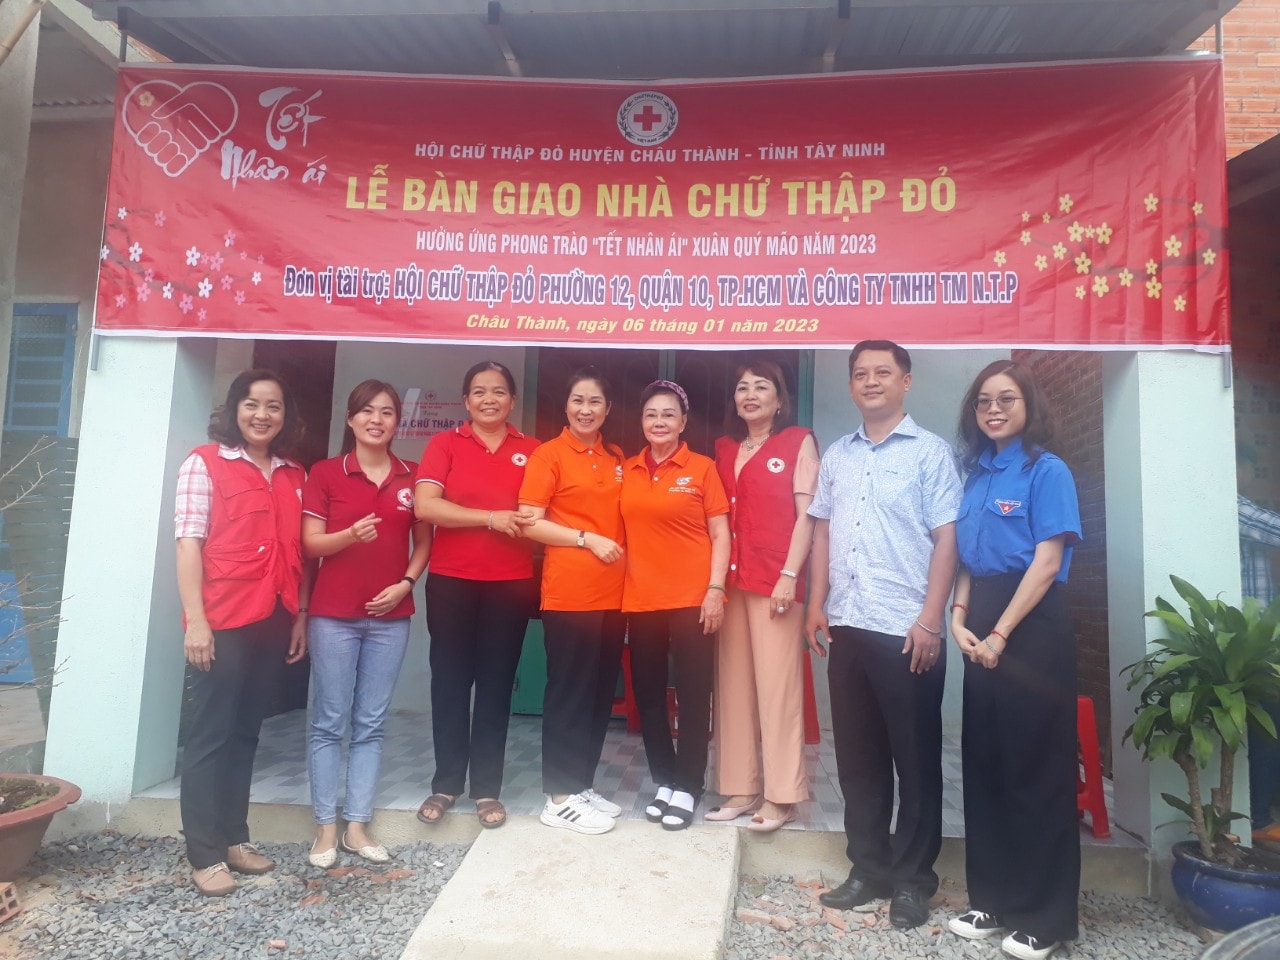 Image: Phường 12 Quận 10 Lễ trao tặng nhà “Mái ấm tình thương” tại tỉnh Tây Ninh.